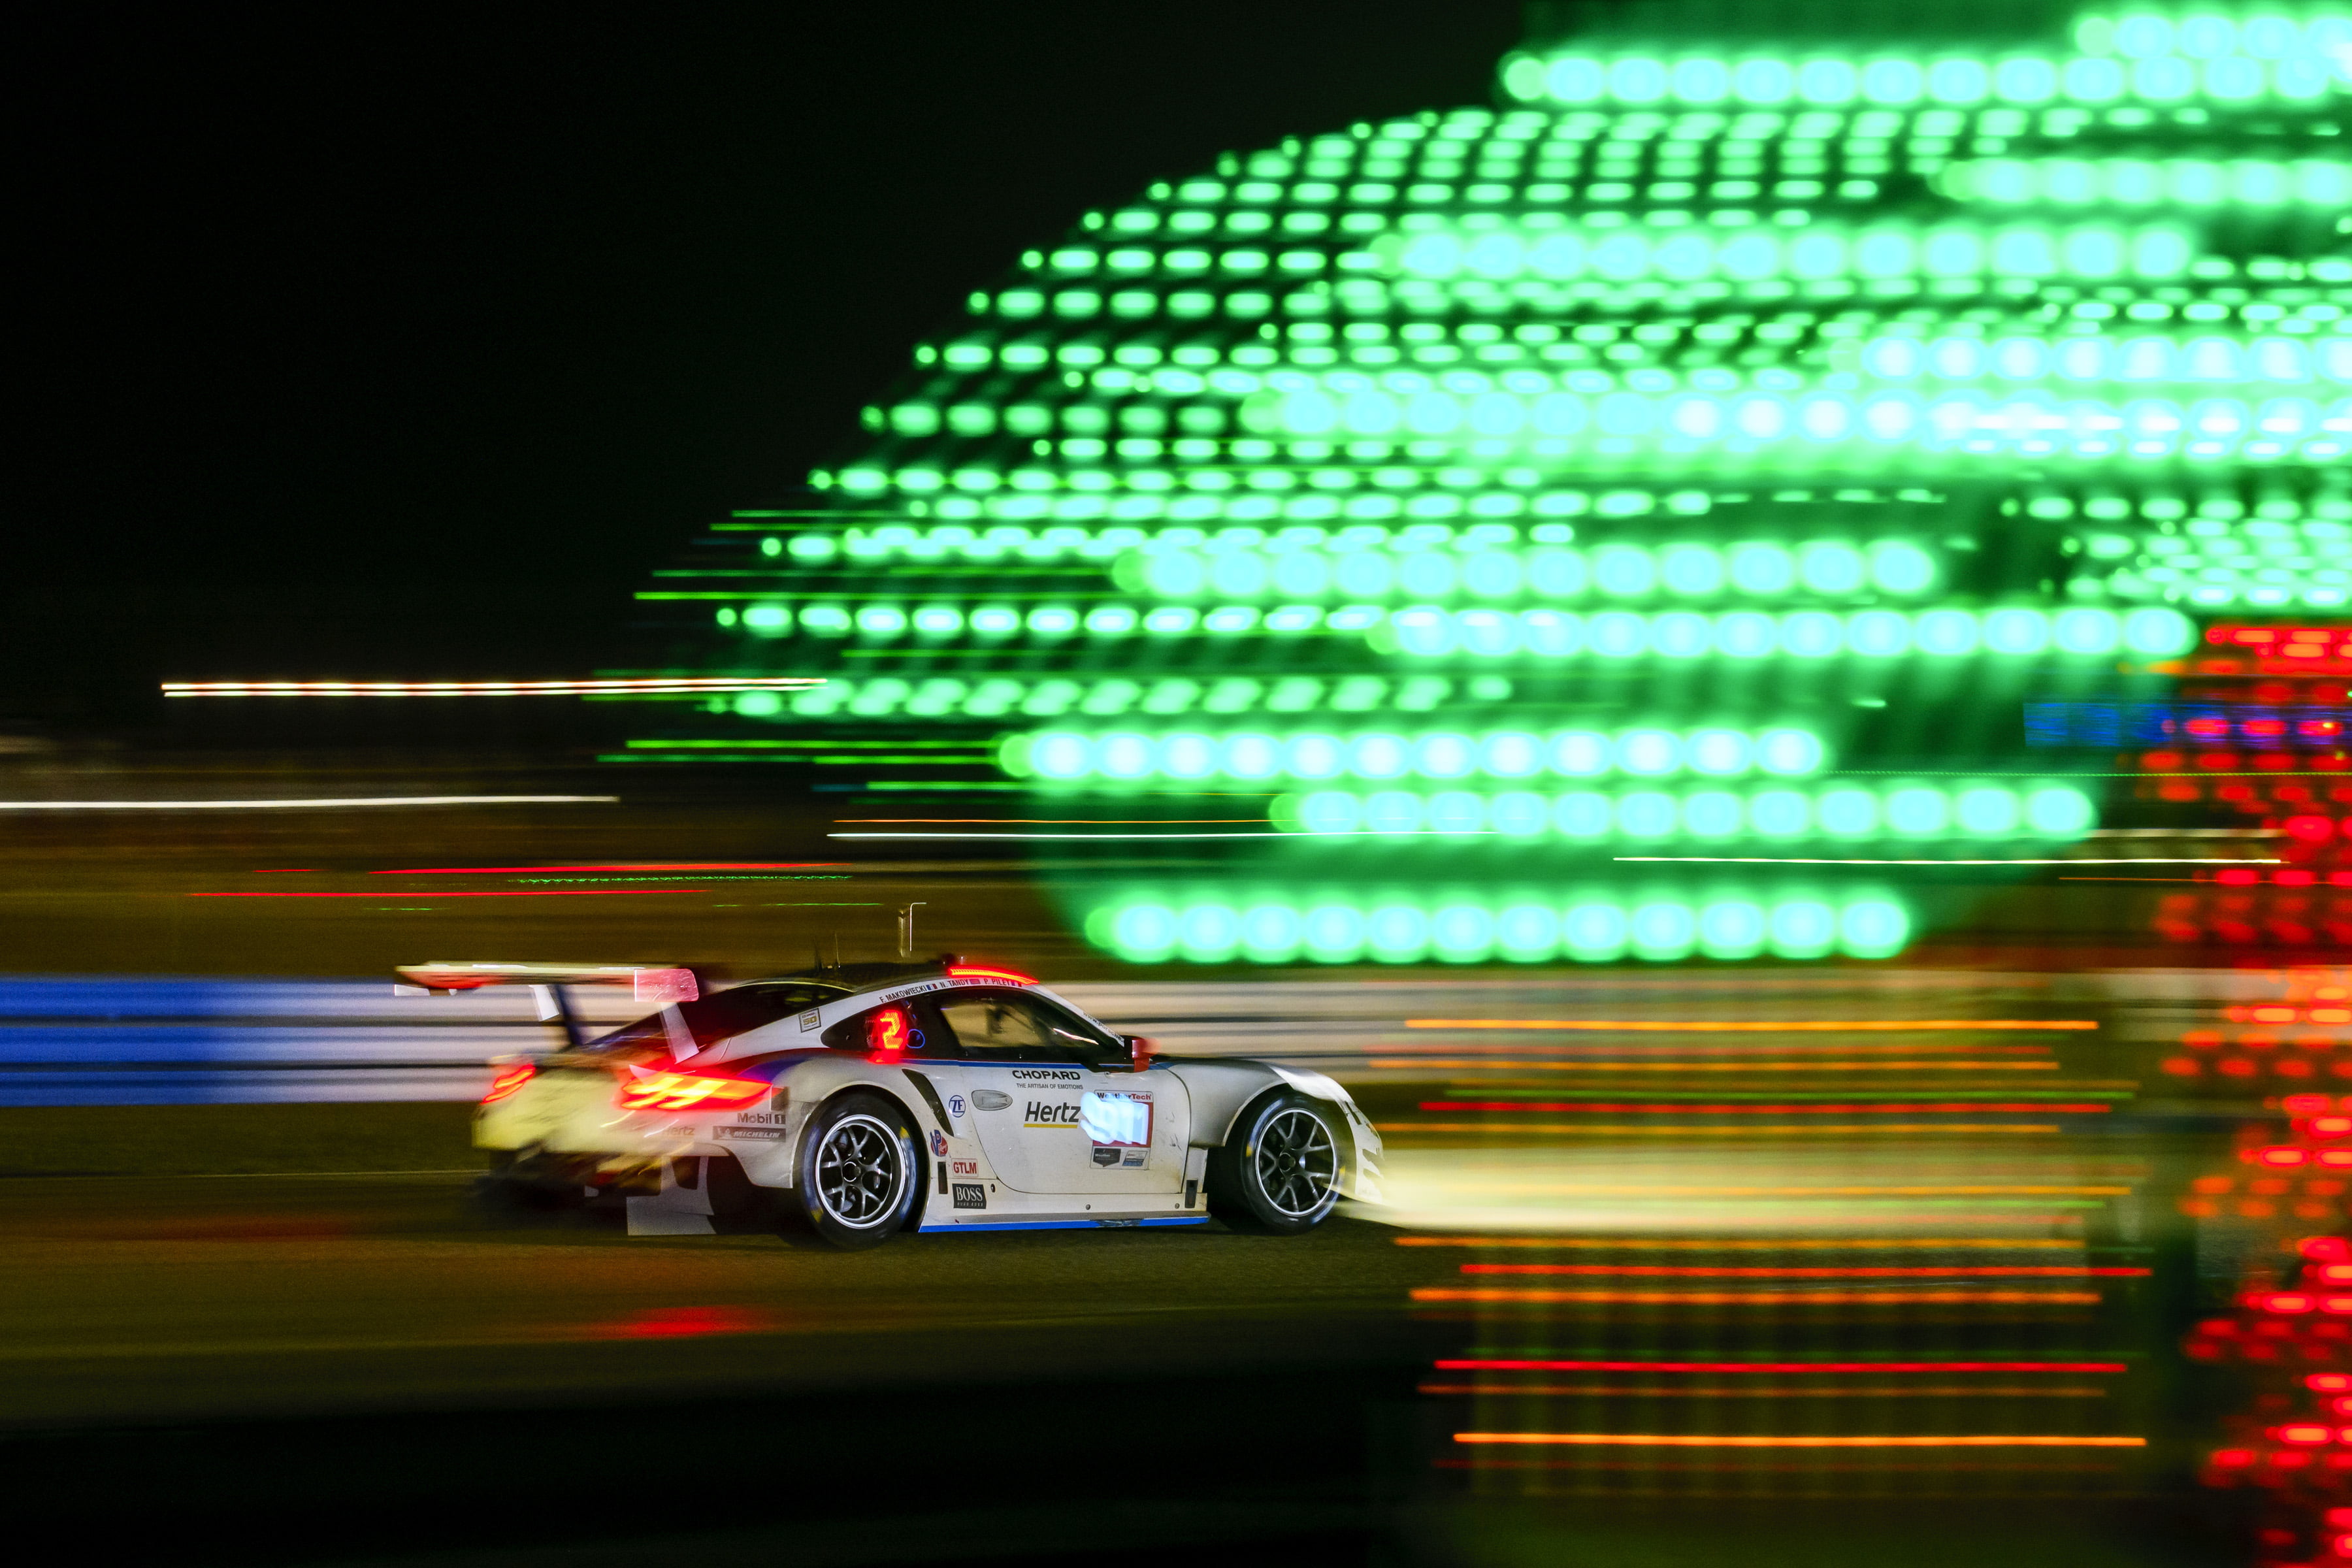 Porsche, Porsche 911 RSR, lights, motion blur, photography